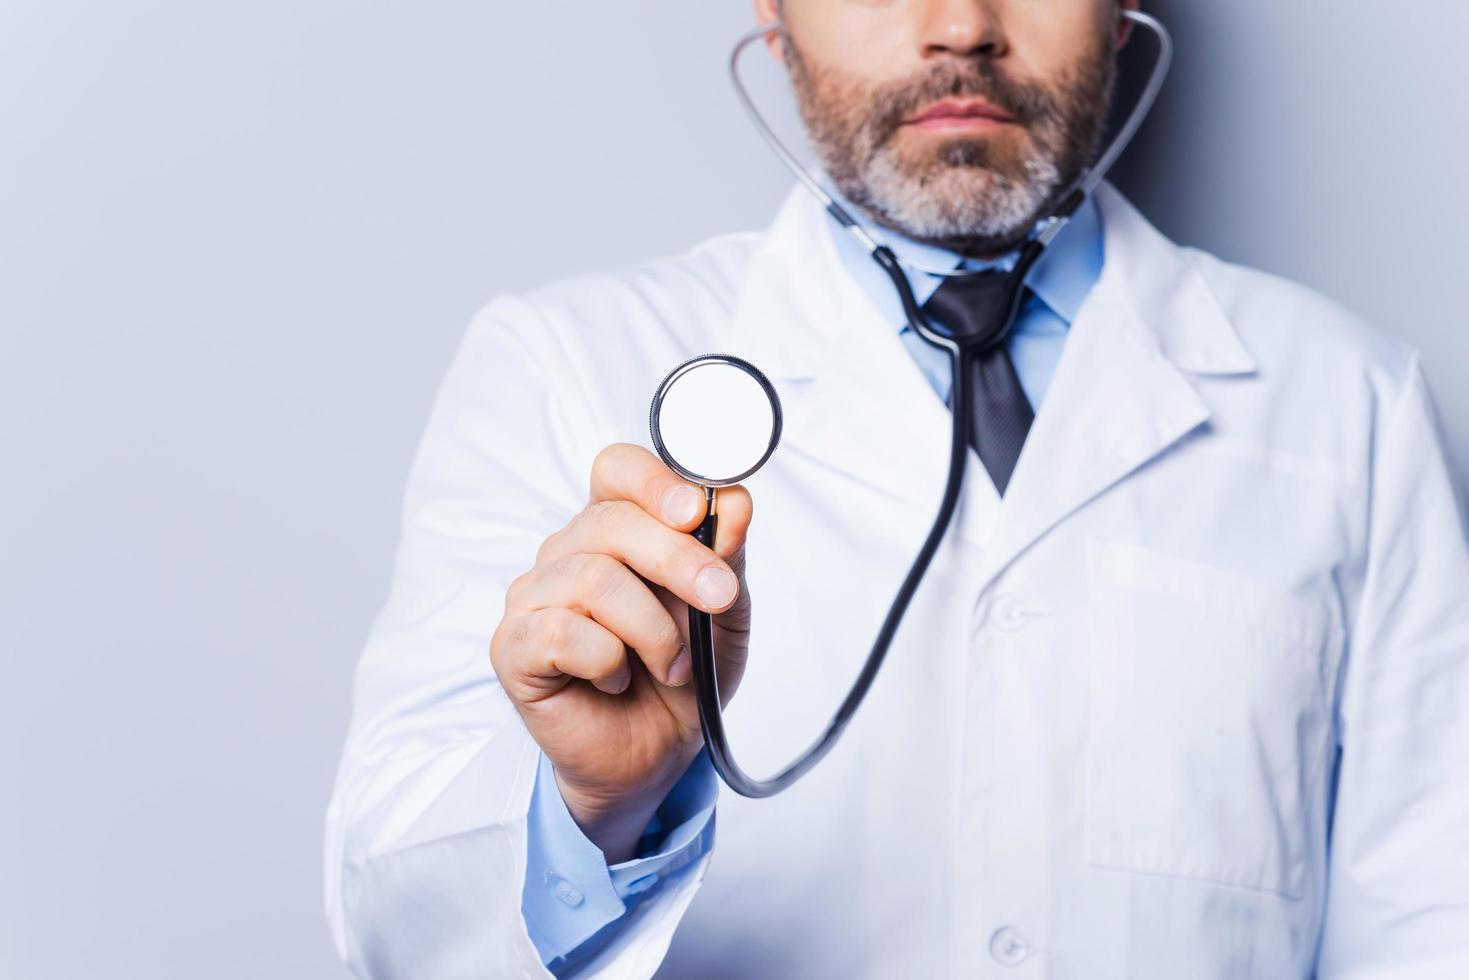 exame médico. close-up do médico de cabelos grisalhos maduros examinando você com estetoscópio em pé contra um fundo cinza foto